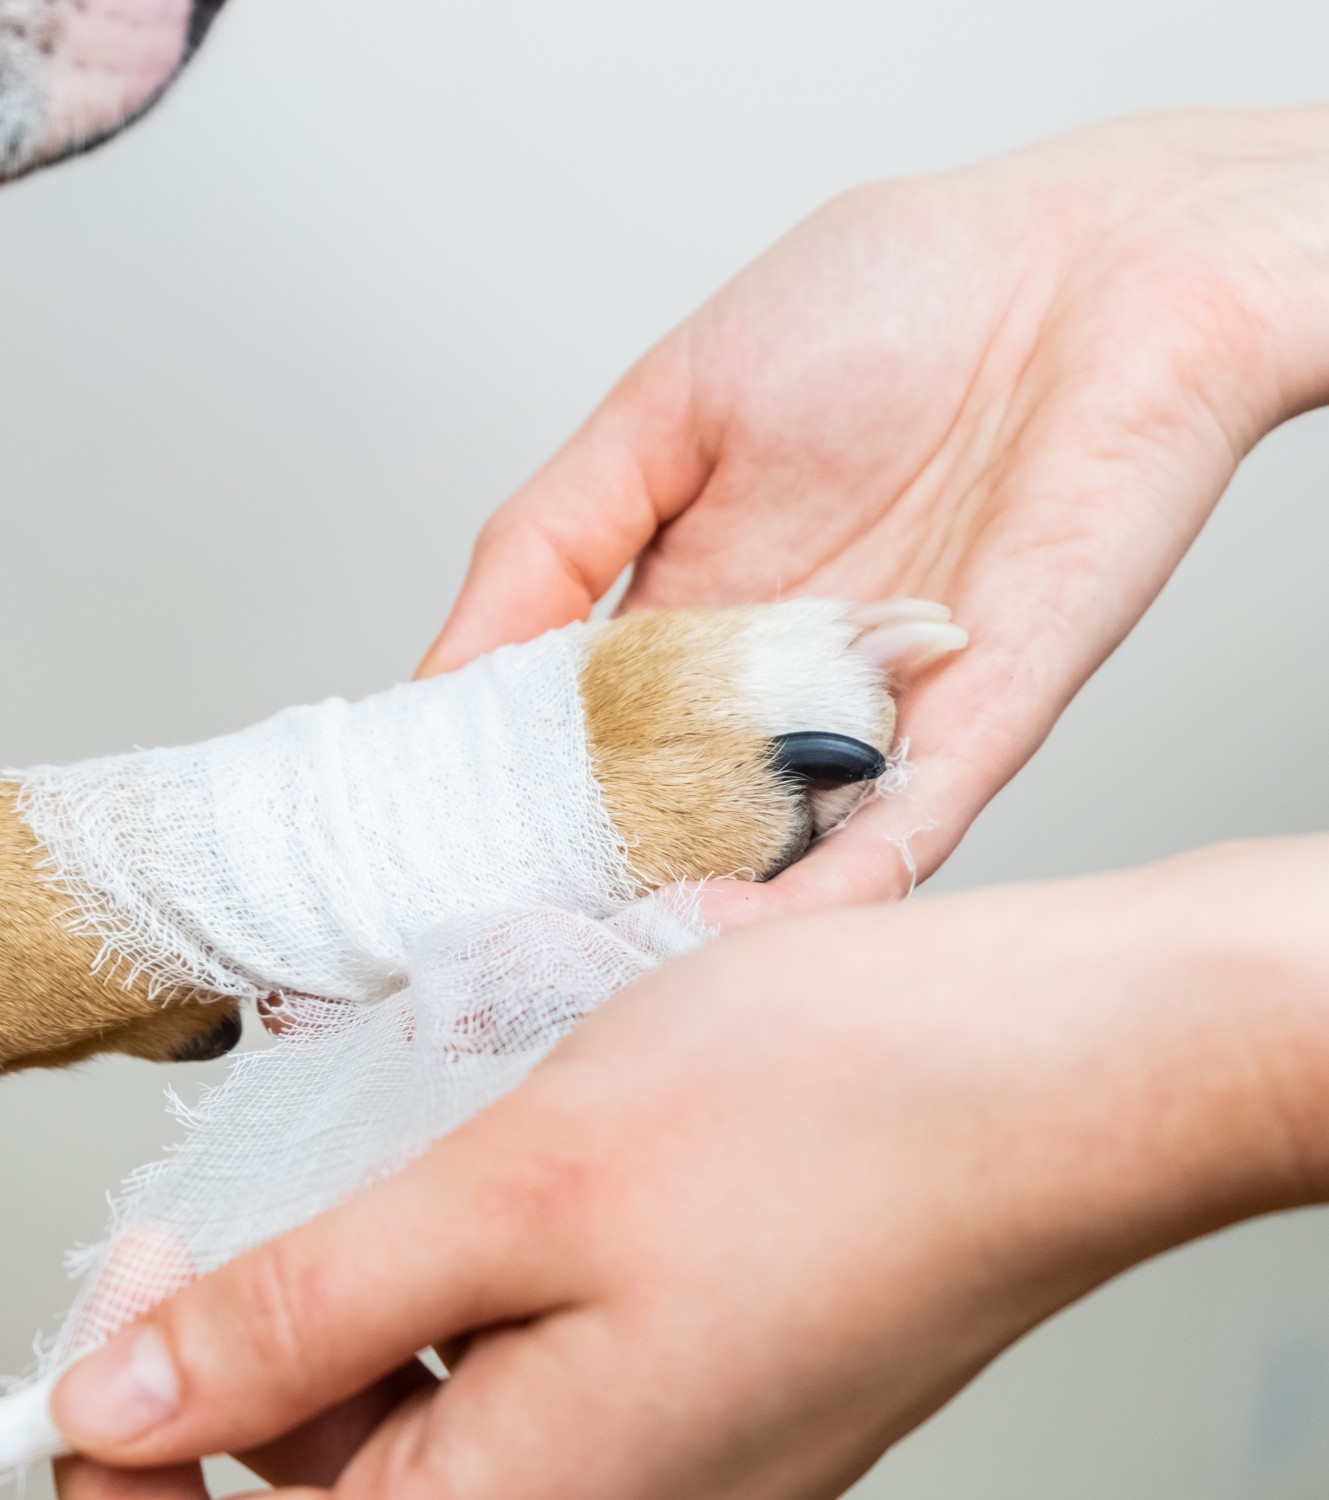 Dog being bandage stock image.